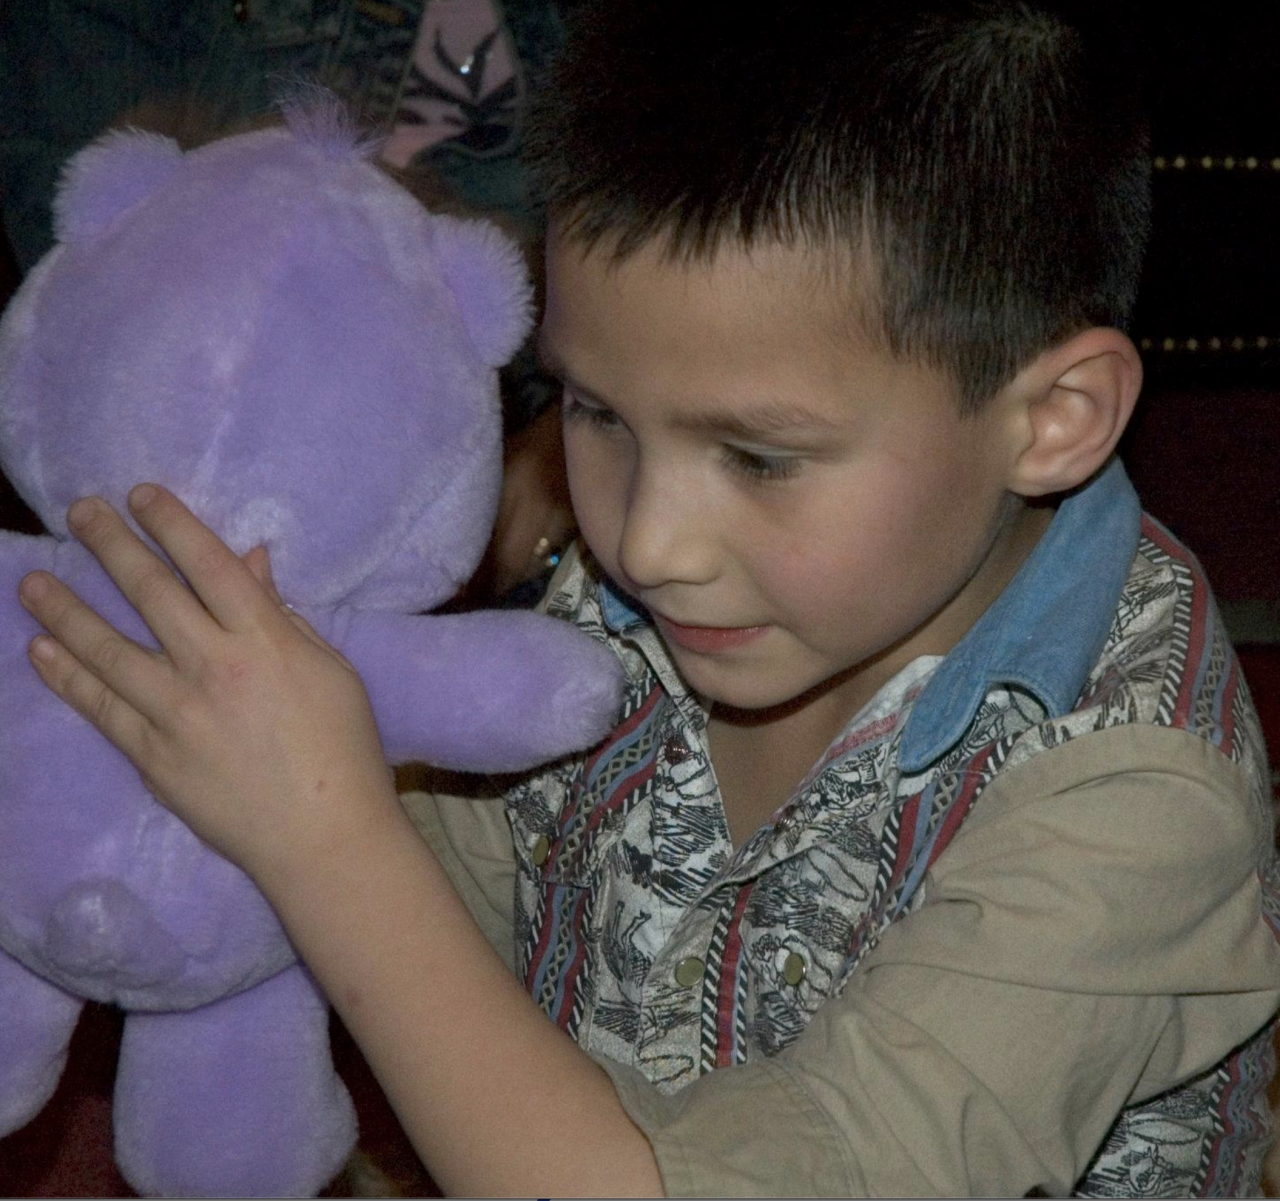 Young Derek holding a purple stuff bear